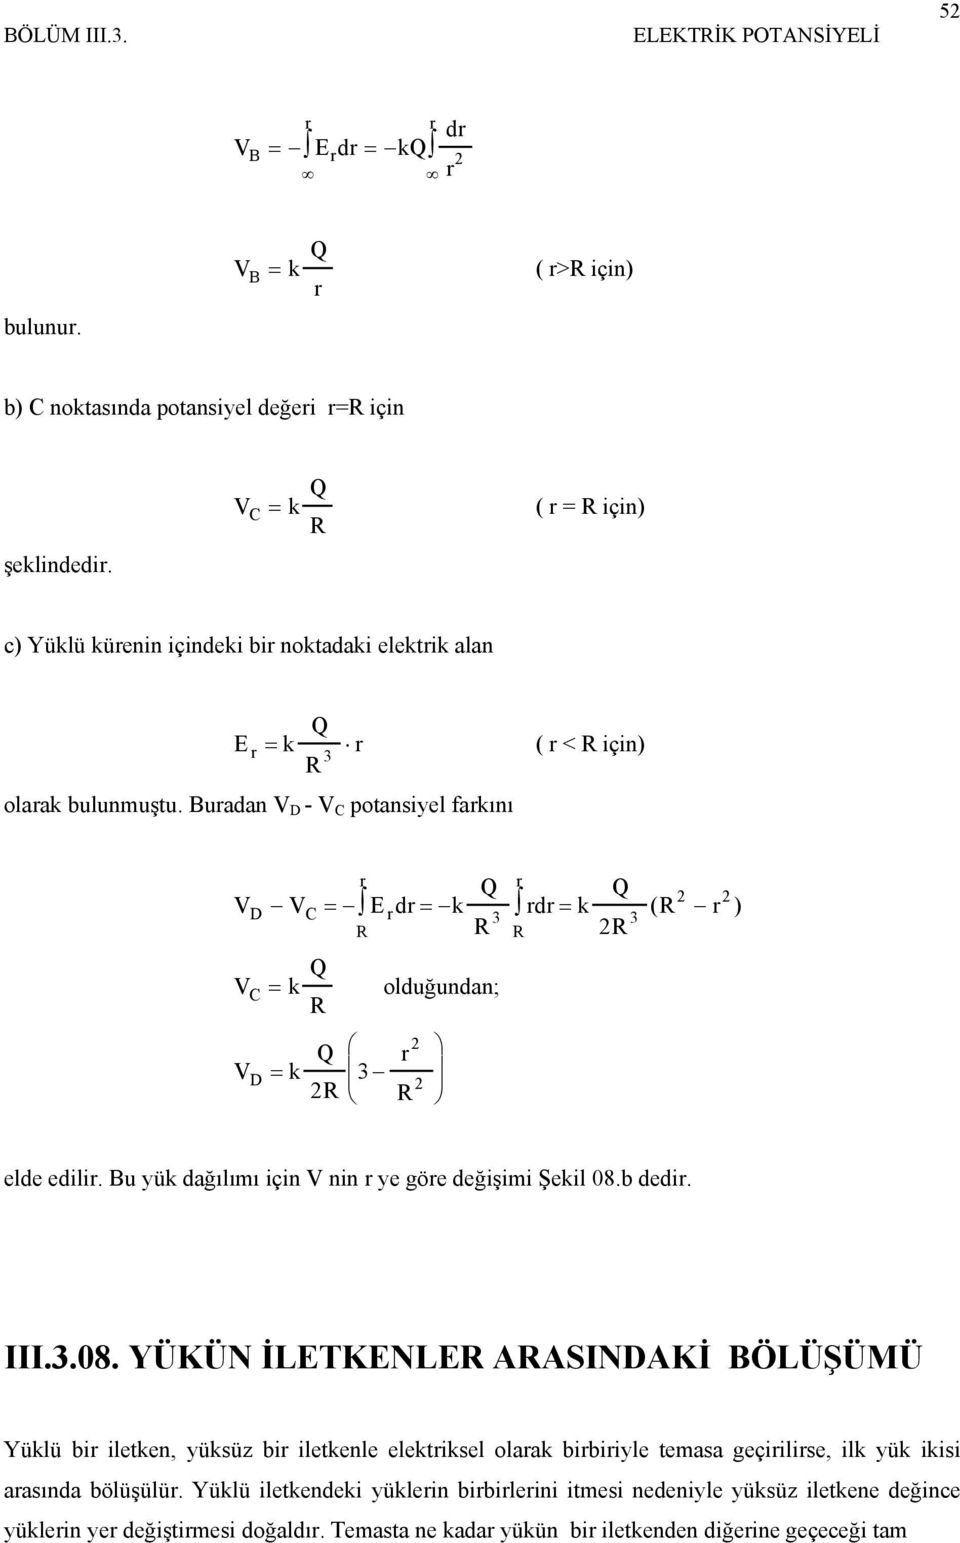 Buadan V D - V C potansiyel fakını V V E d k Q d k Q D C = = = ( R ) 3 3 R R R V k Q C = R olduğundan; R V D = k Q R 3 R elde edili. Bu yük dağılımı için V nin ye göe değişimi Şekil 08.